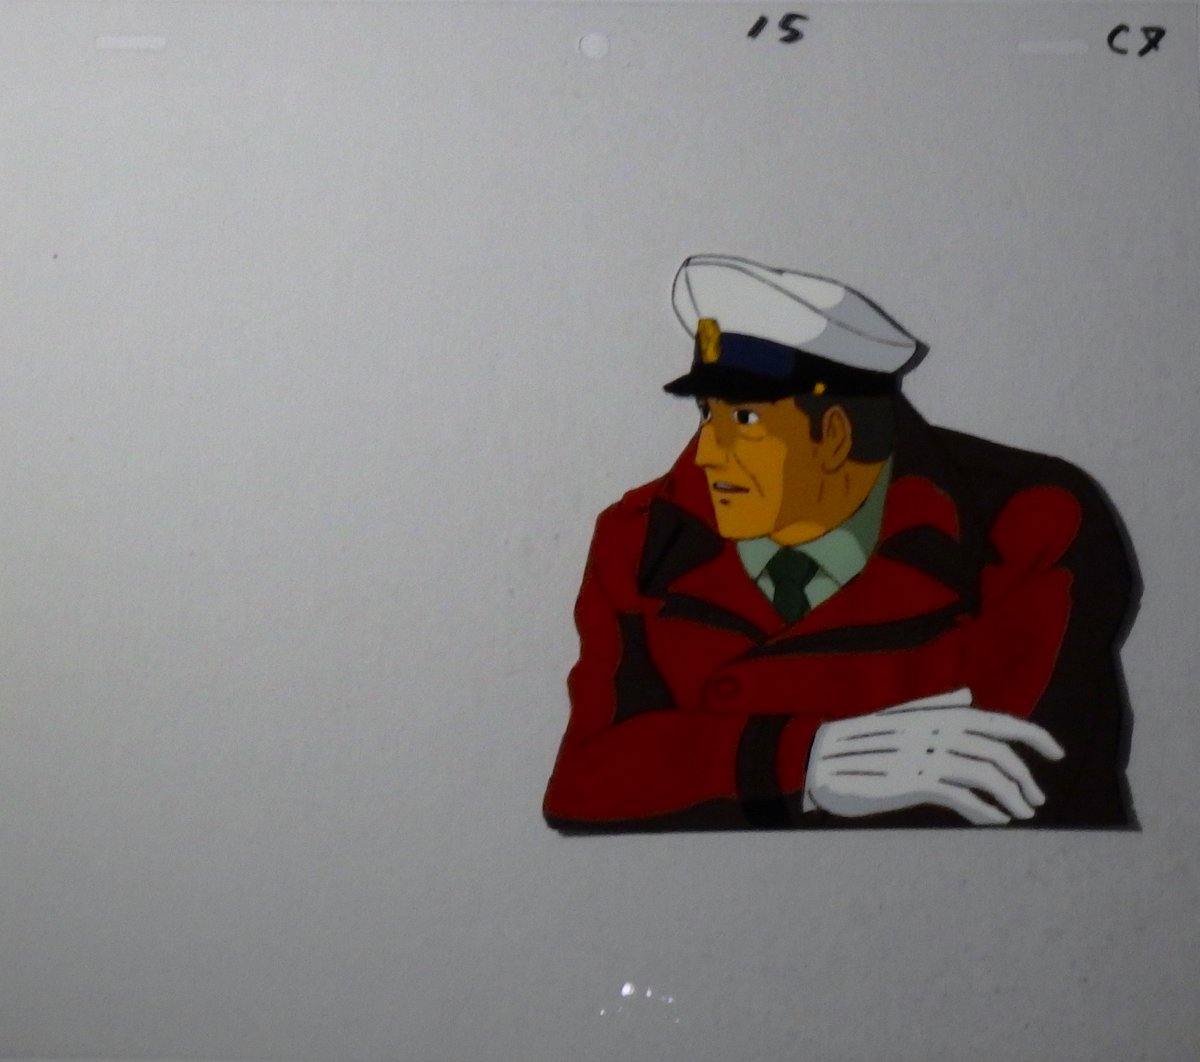 「宇宙空母ブルーノア」セル画（1979年）
ブルーノア戦務長・清水忠治のセル画
#宇宙空母ブルーノア